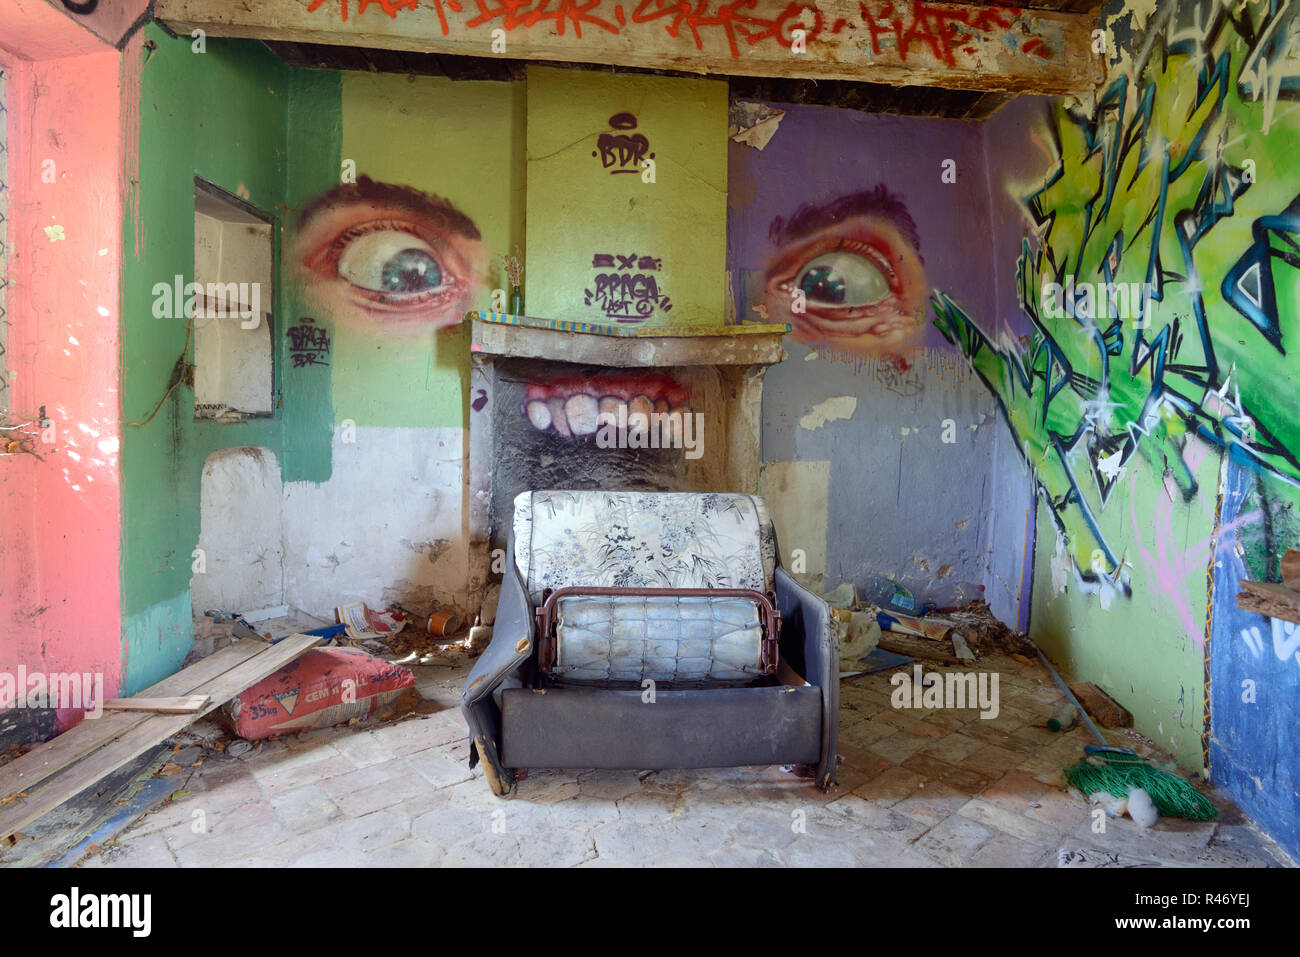 Des murs couverts de graffitis, de détritus éparpillés au sol et canapé cassée dans l'accroupissement Intérieur de maison abandonnée France Banque D'Images